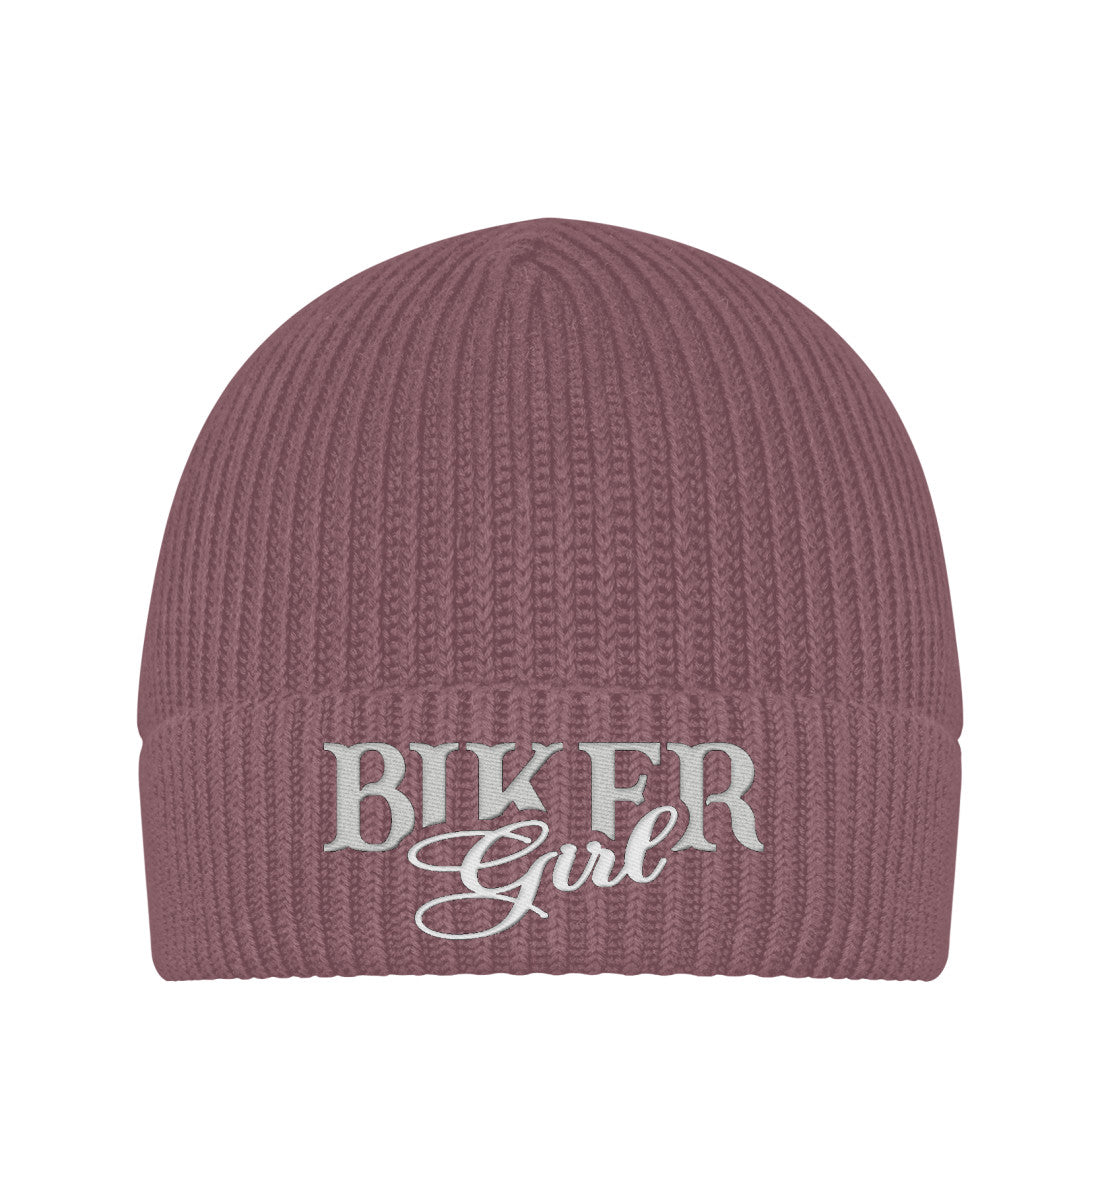 Eine Bikerin Beanie Mütze für Motorradfahrerinnen von Wingbikers mit dem Stick, Biker Girl, in alt rosa.